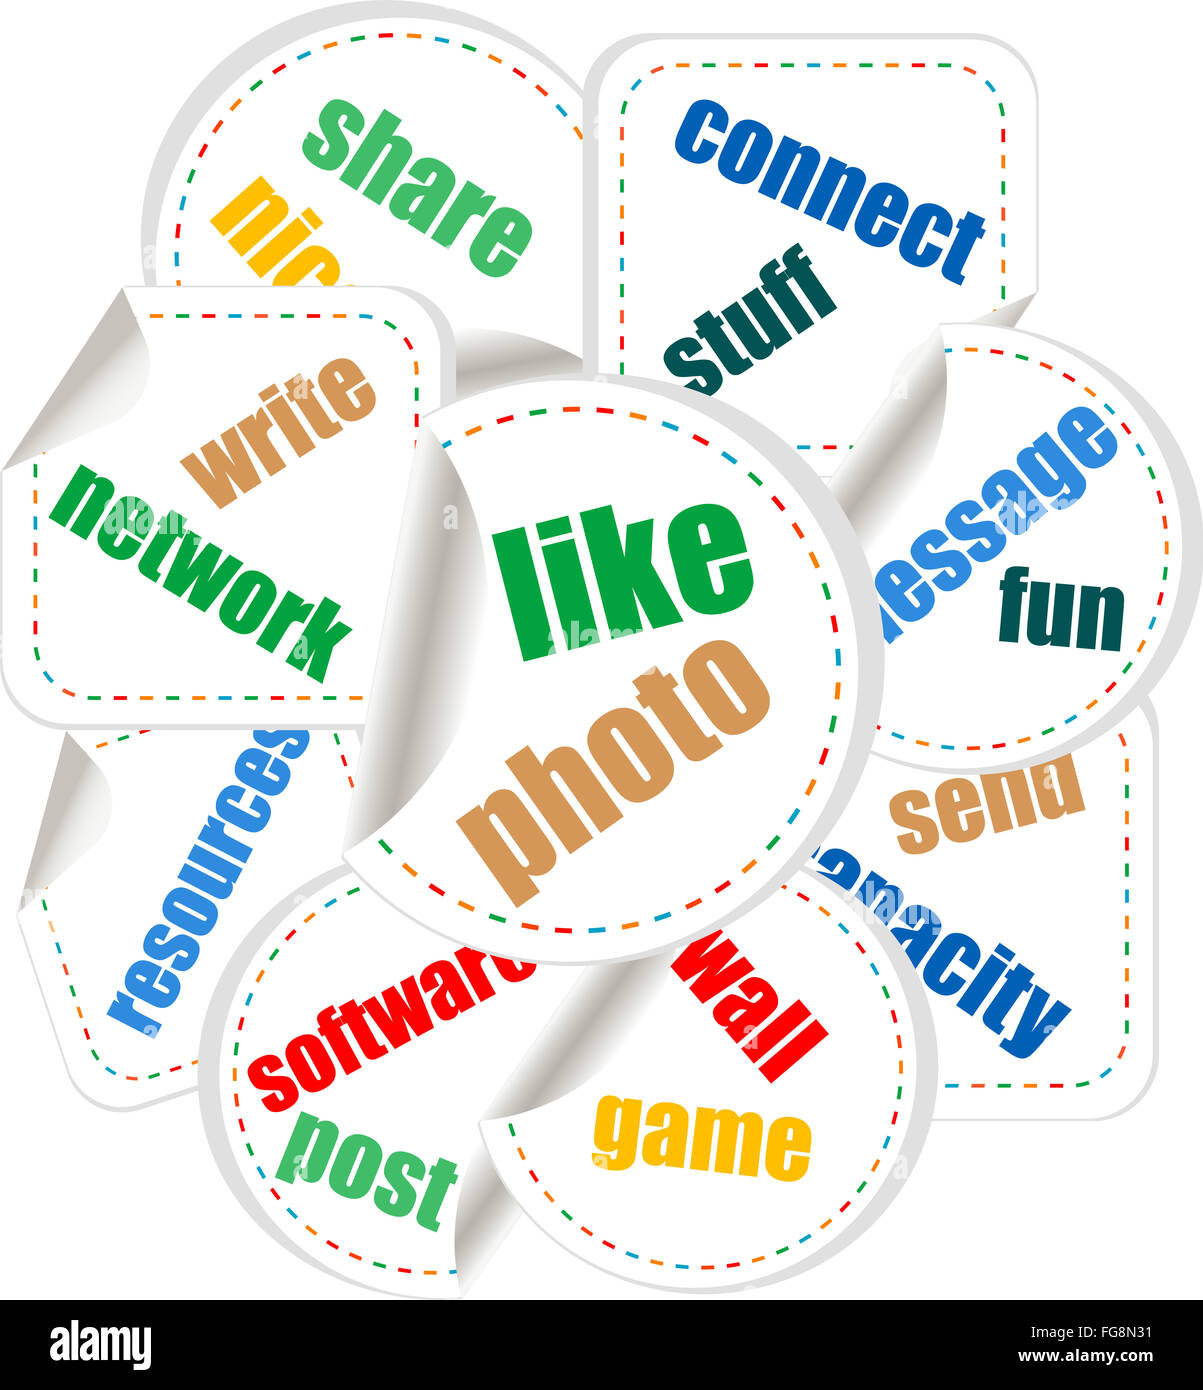 Abstrakte bunte Illustration mit verschiedenen sozialen und Netzwerk Worte. Social-Networking-Thema Stockfoto